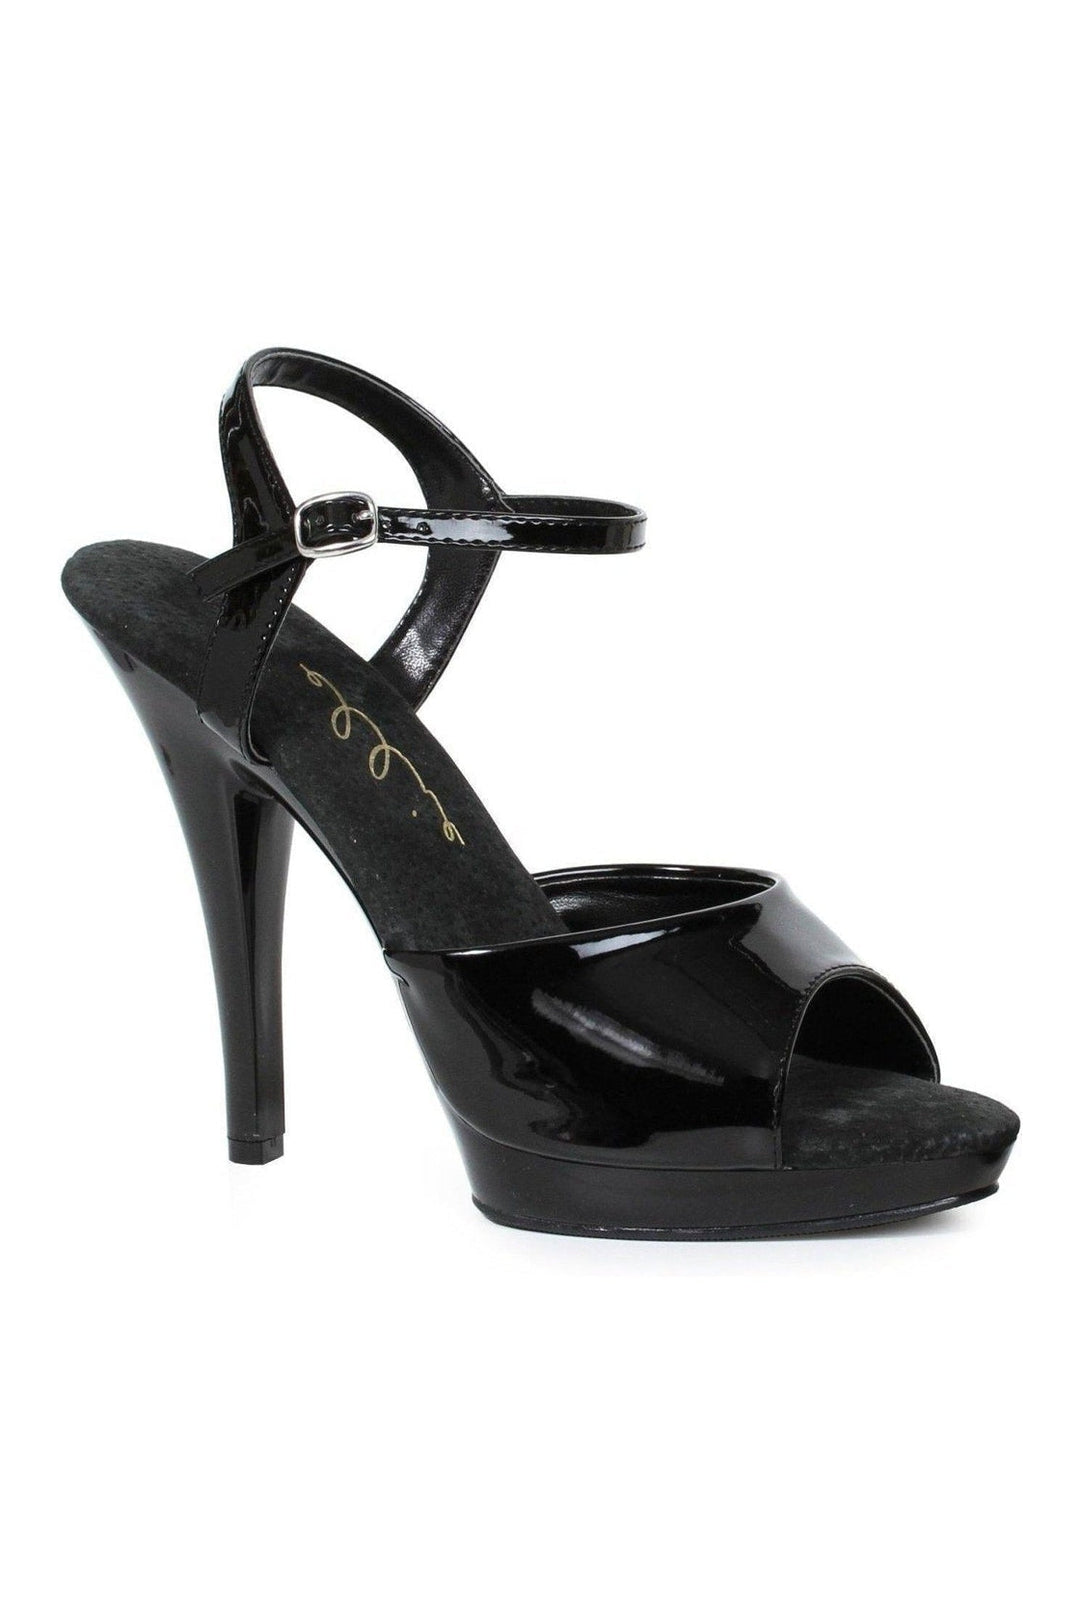 521-JULIET-Wide Width Fashion Sandal | Black Patent-Ellie Shoes-SEXYSHOES.COM